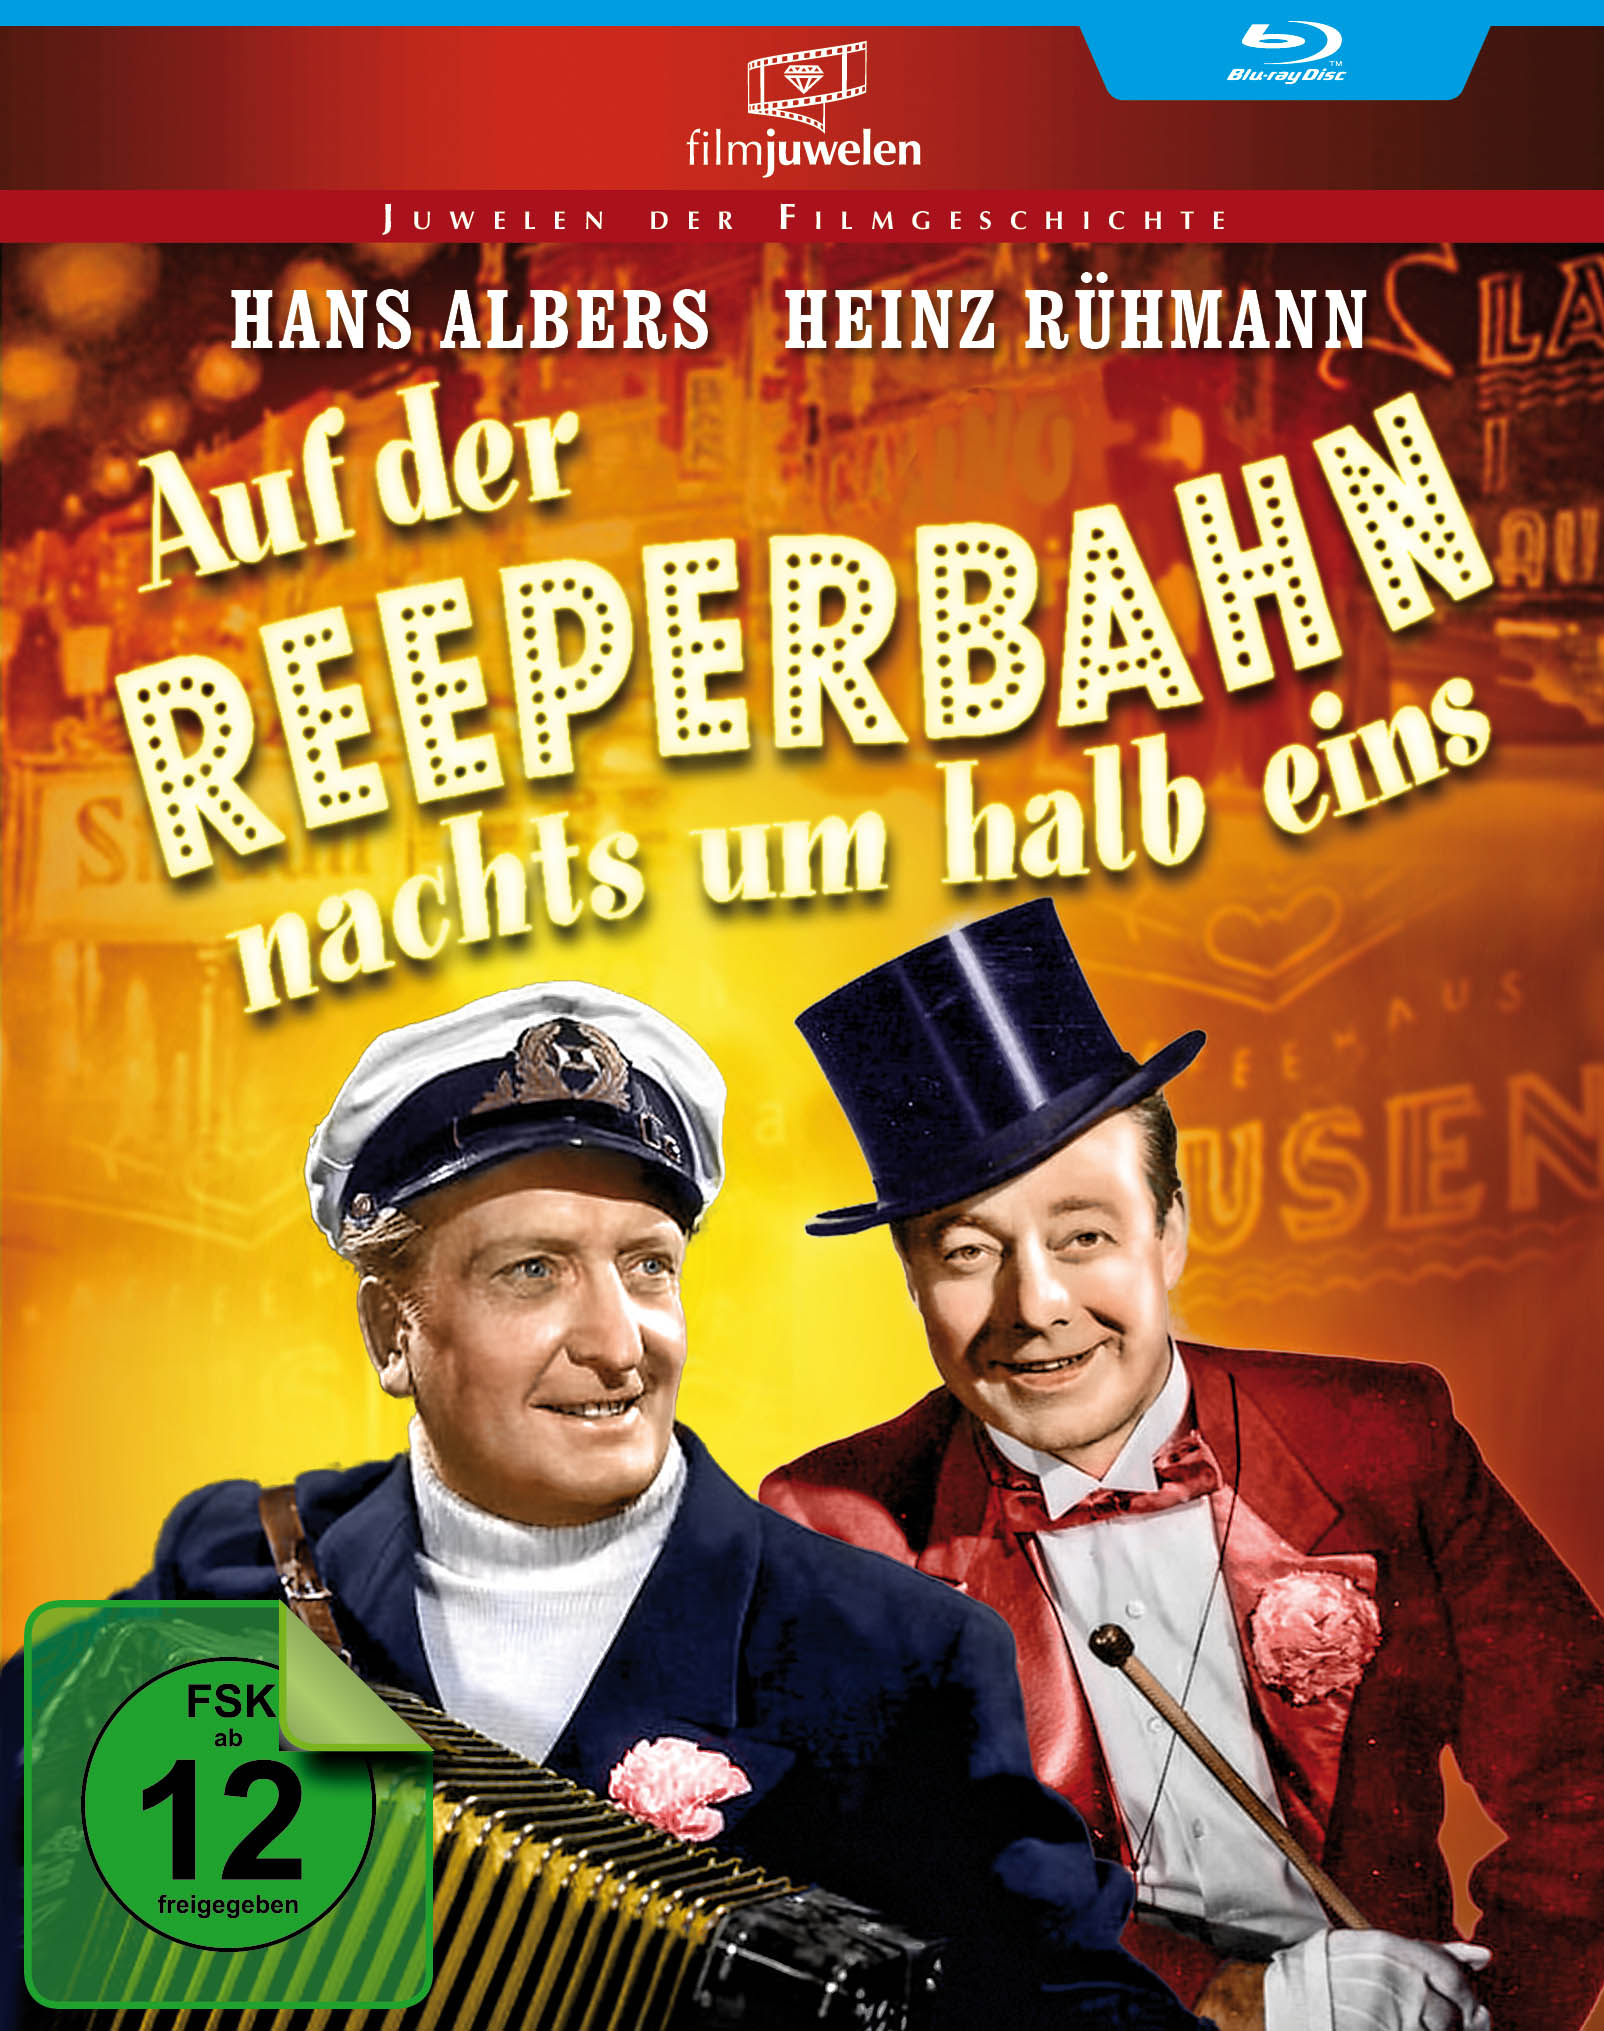 Heinz Rühmann Edition der nachts Blu-ray Auf - Reeperbahn um halb eins